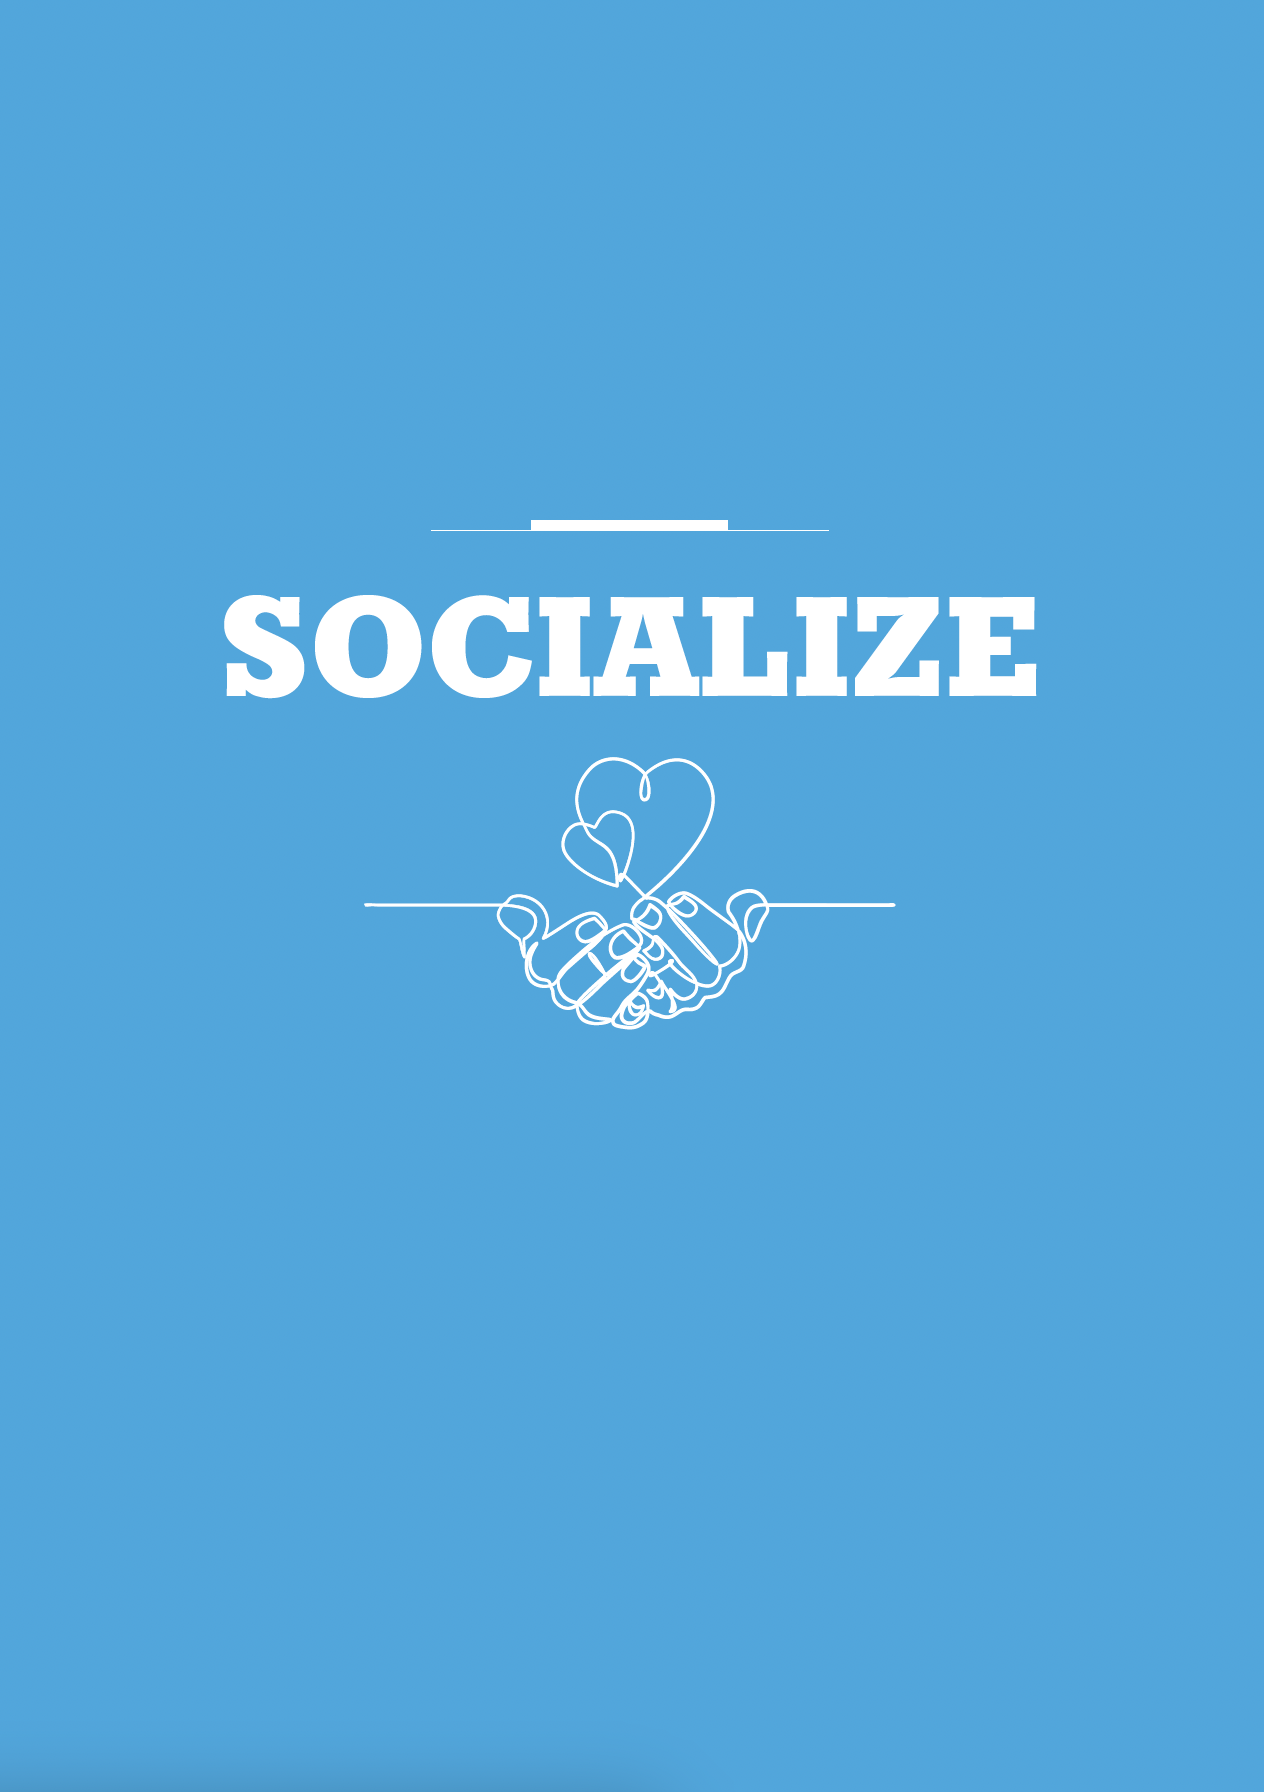 Socialize